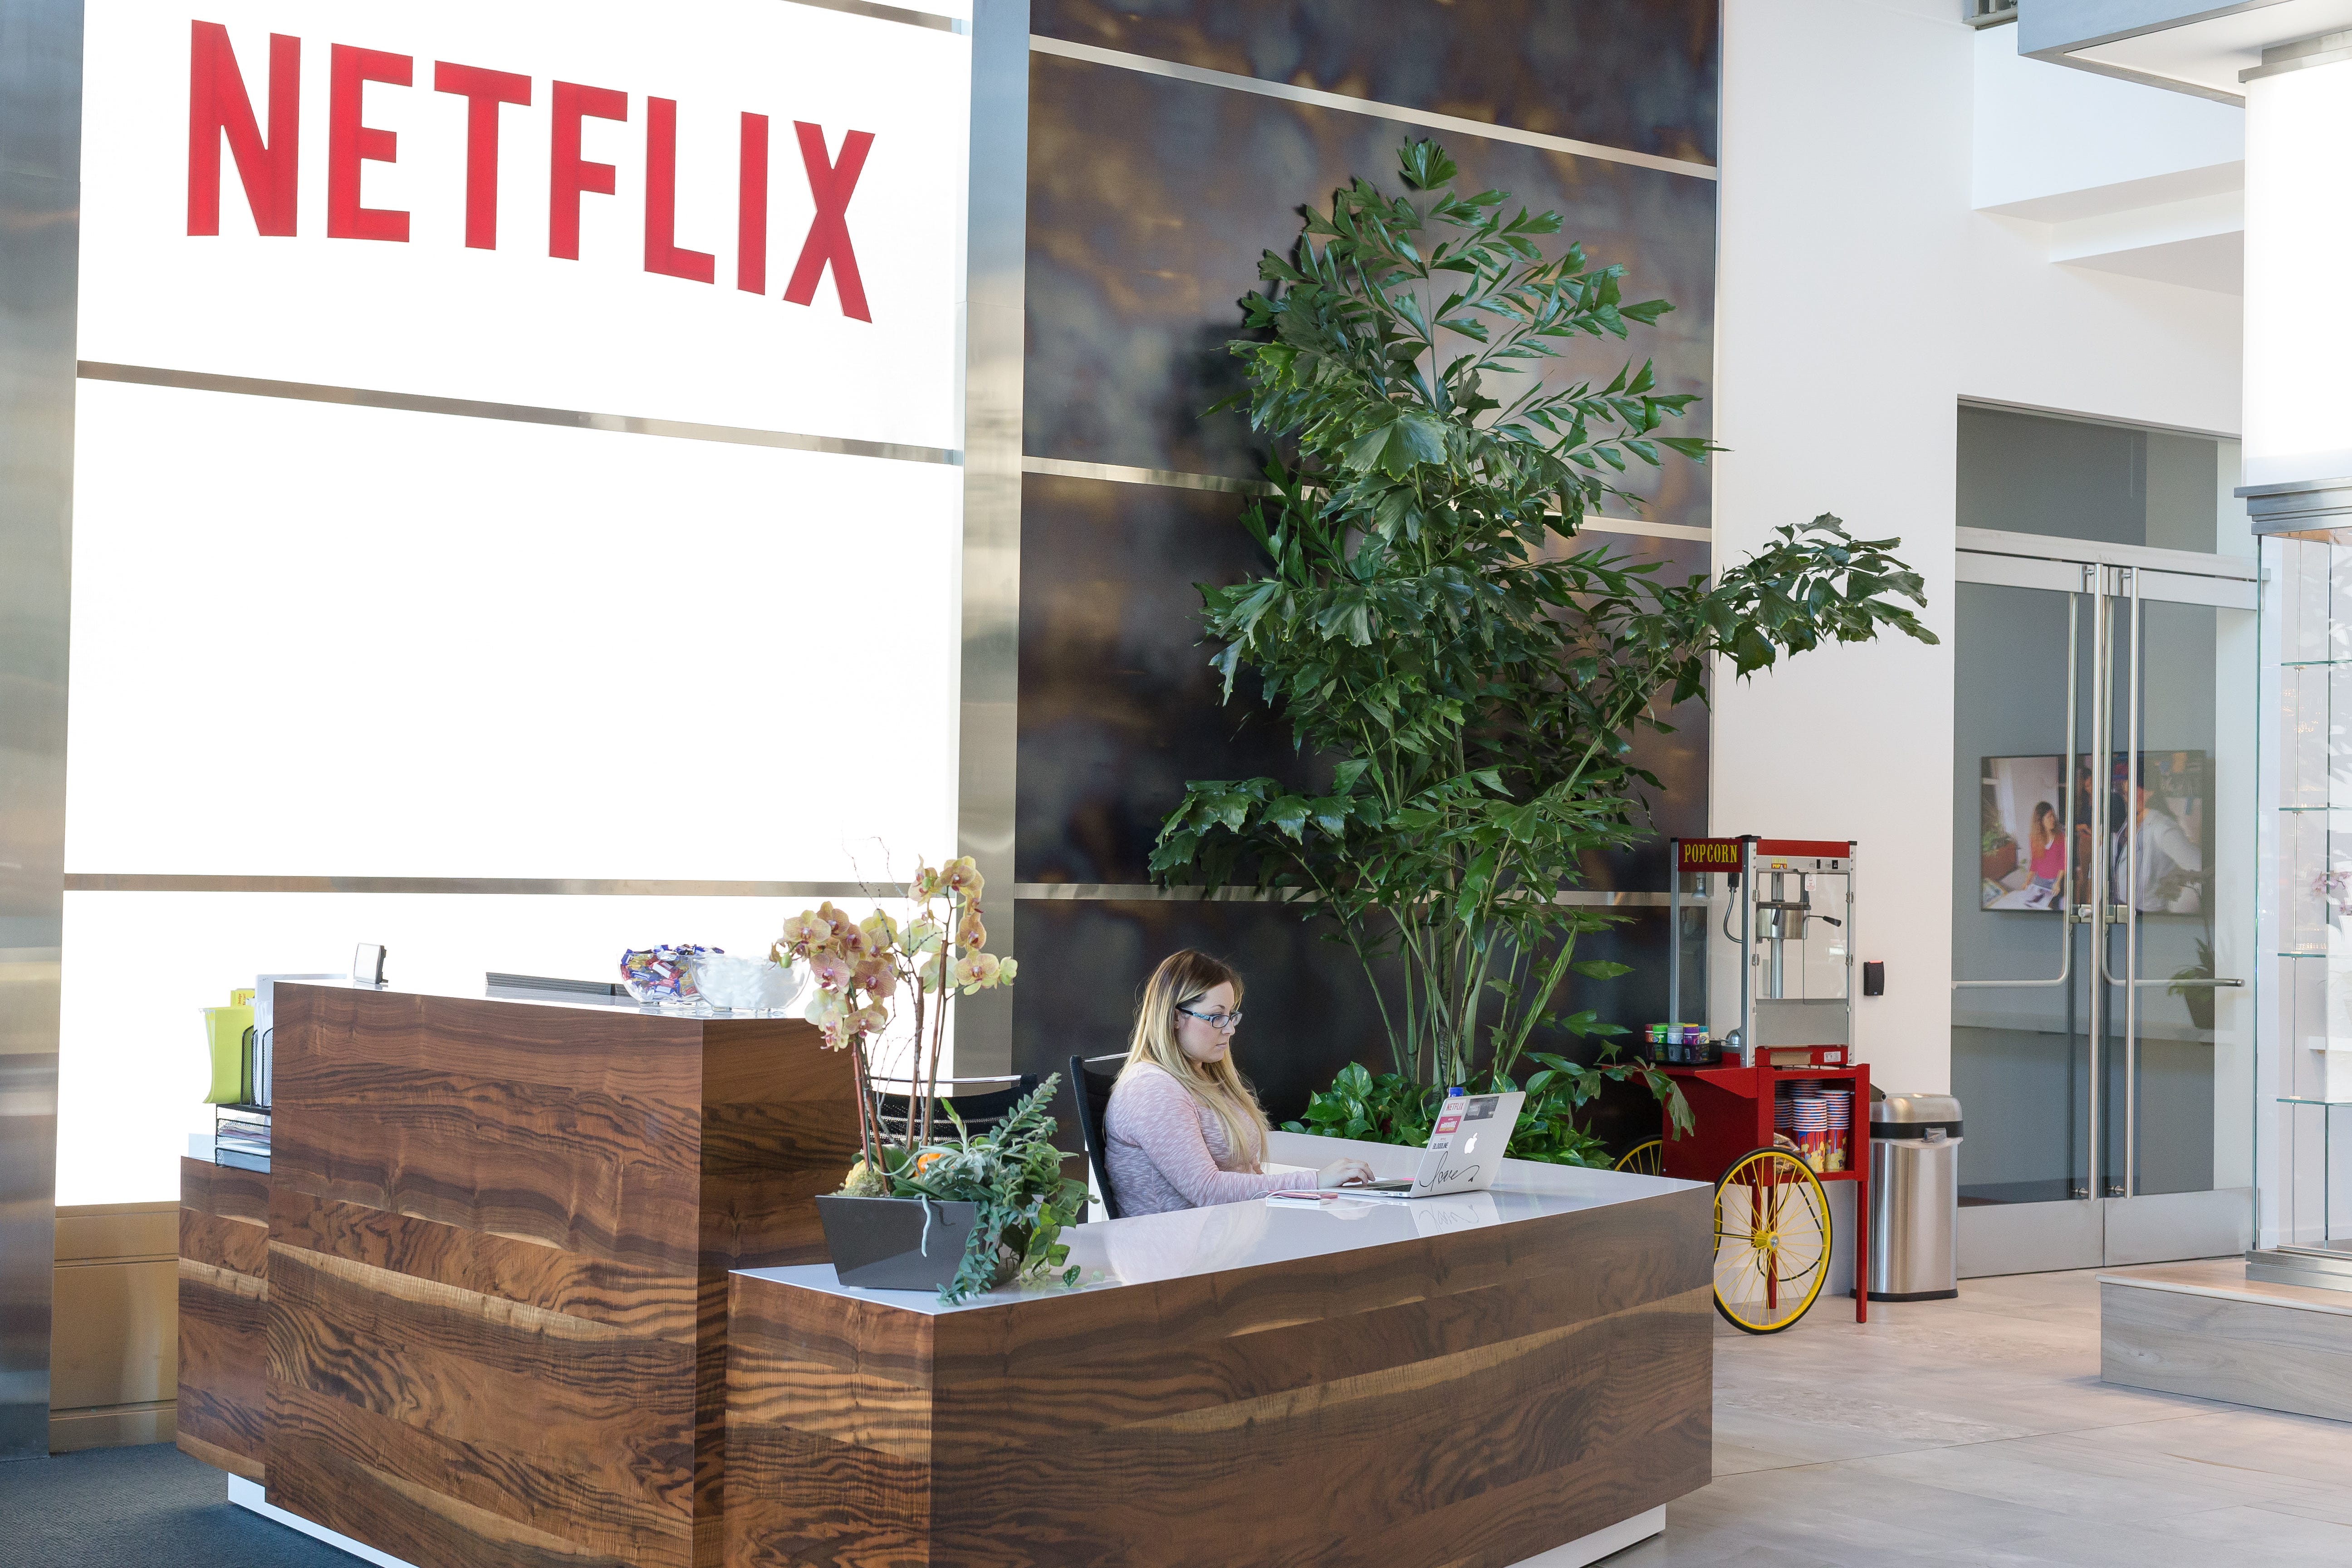 Netflix may start offering bonuses to actors, filmmakers